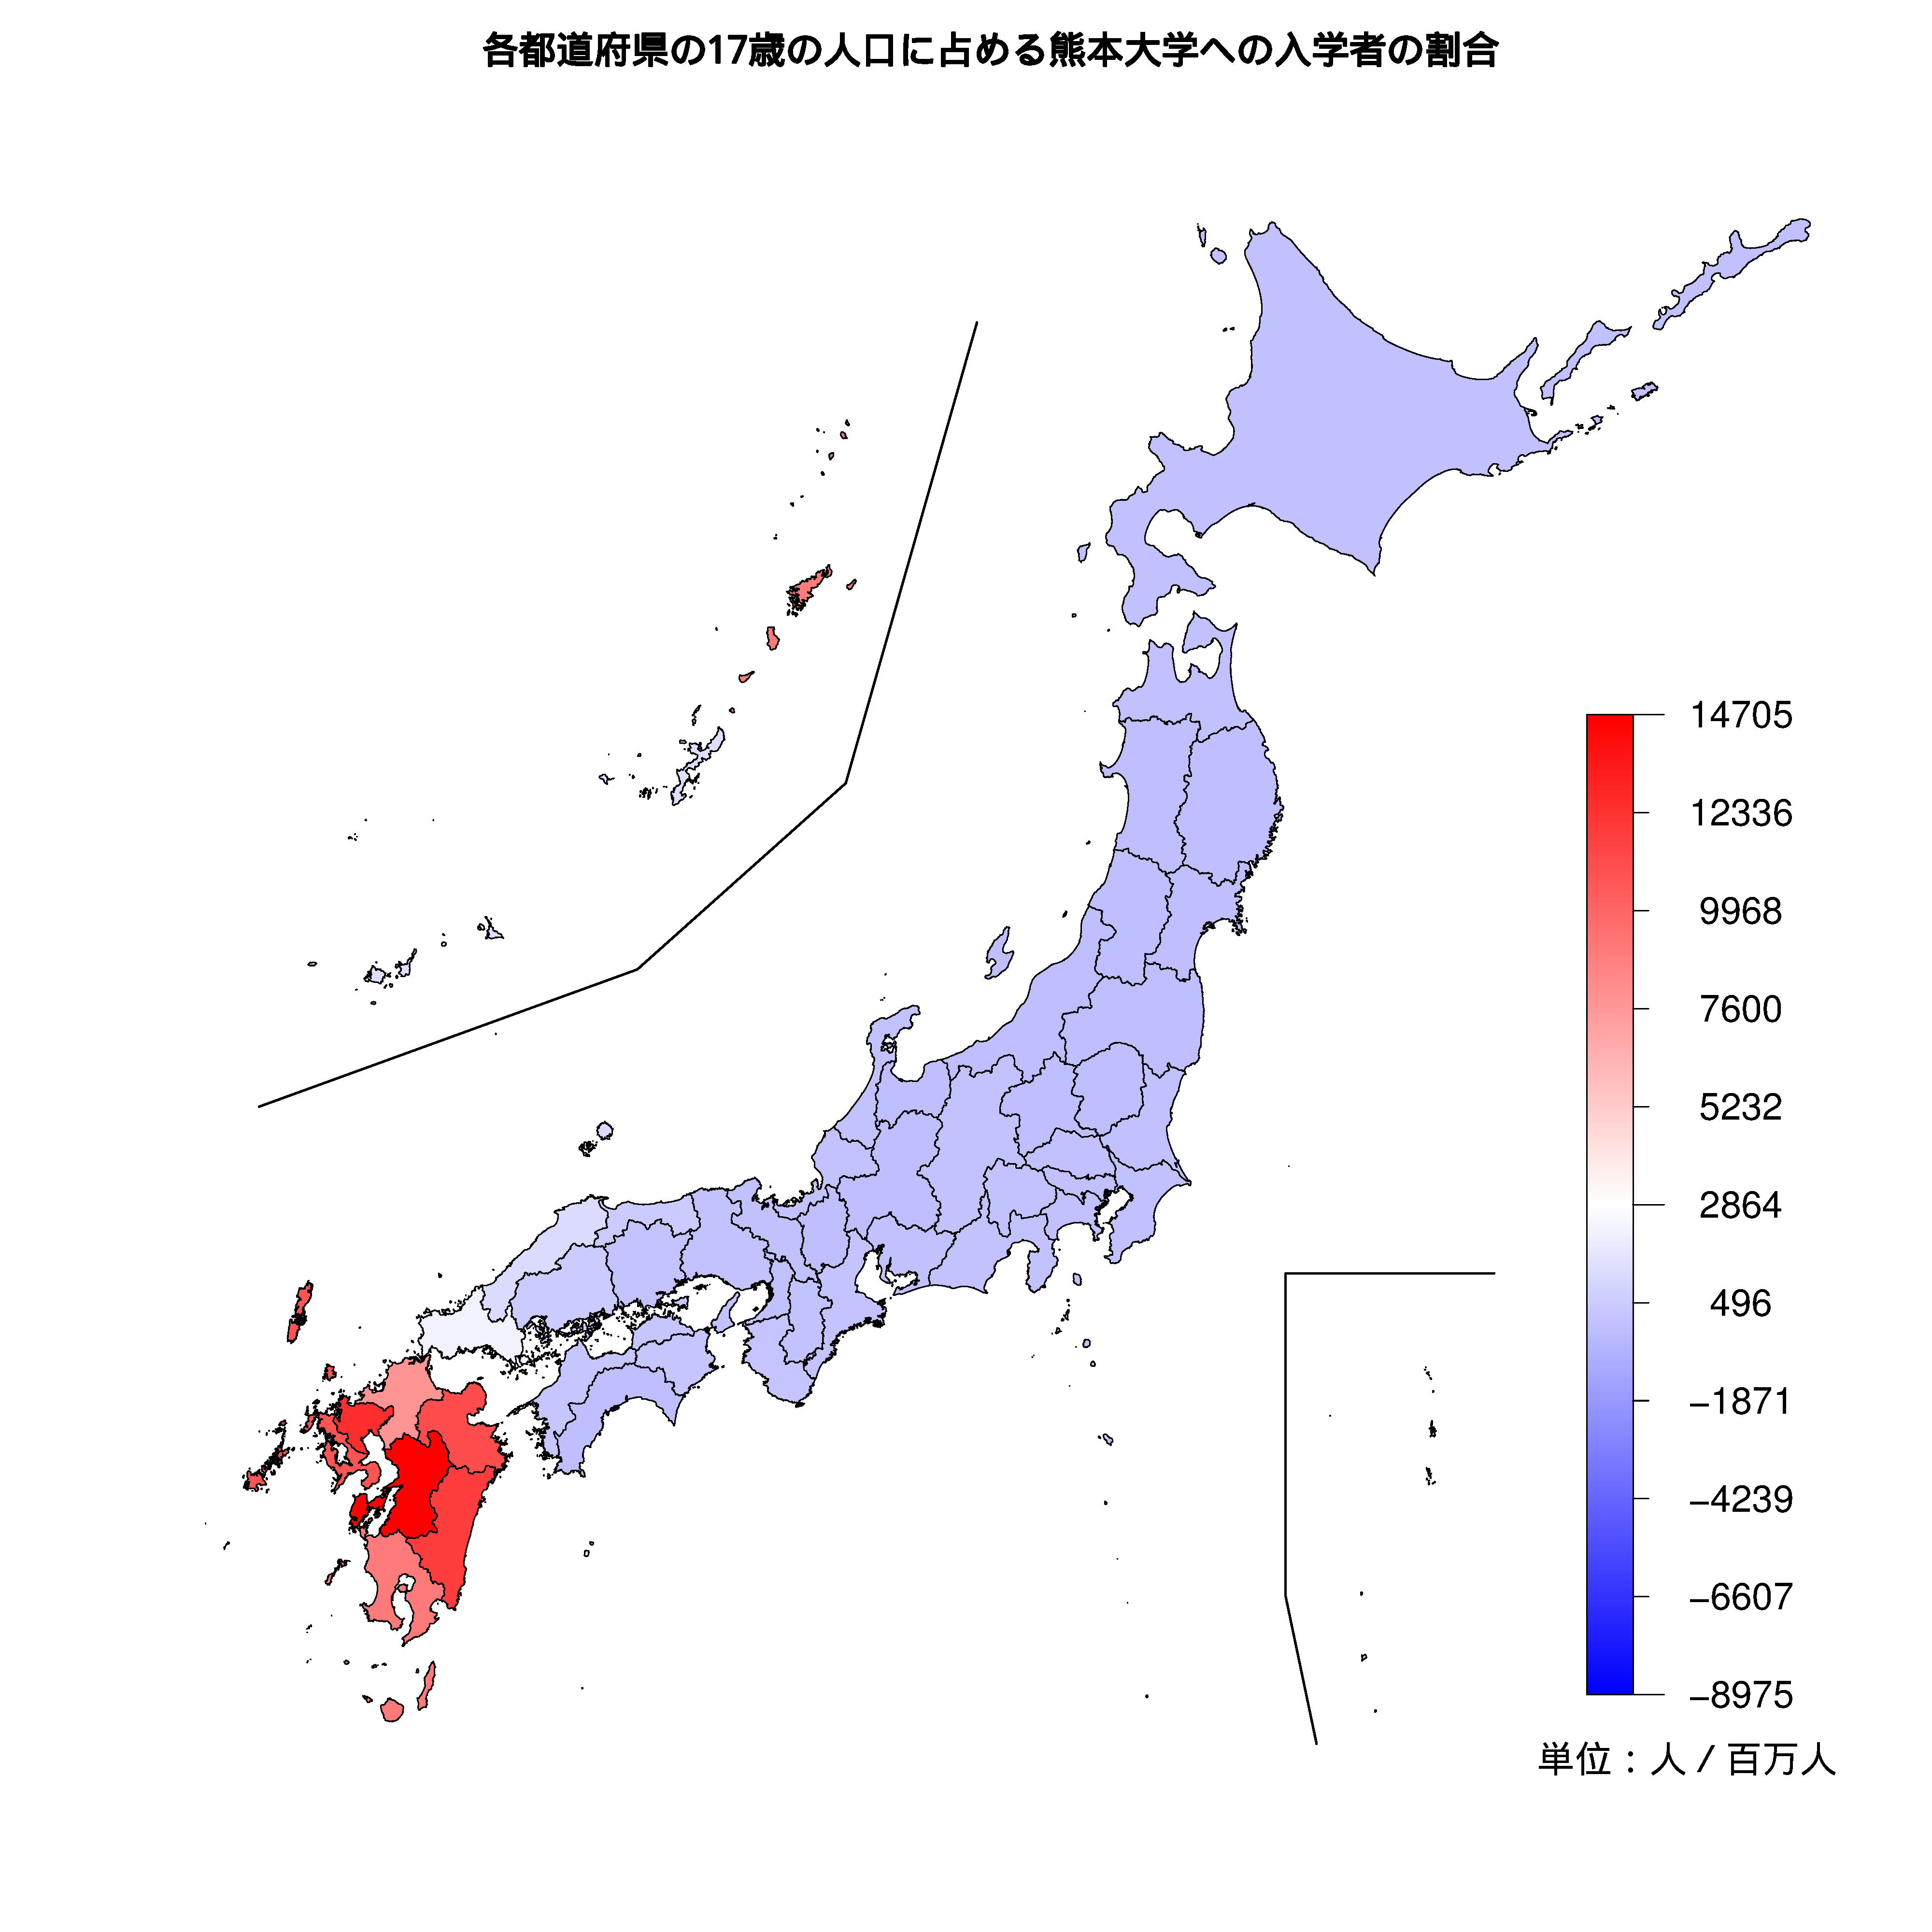 熊本大学への入学者が多い都道府県の色分け地図